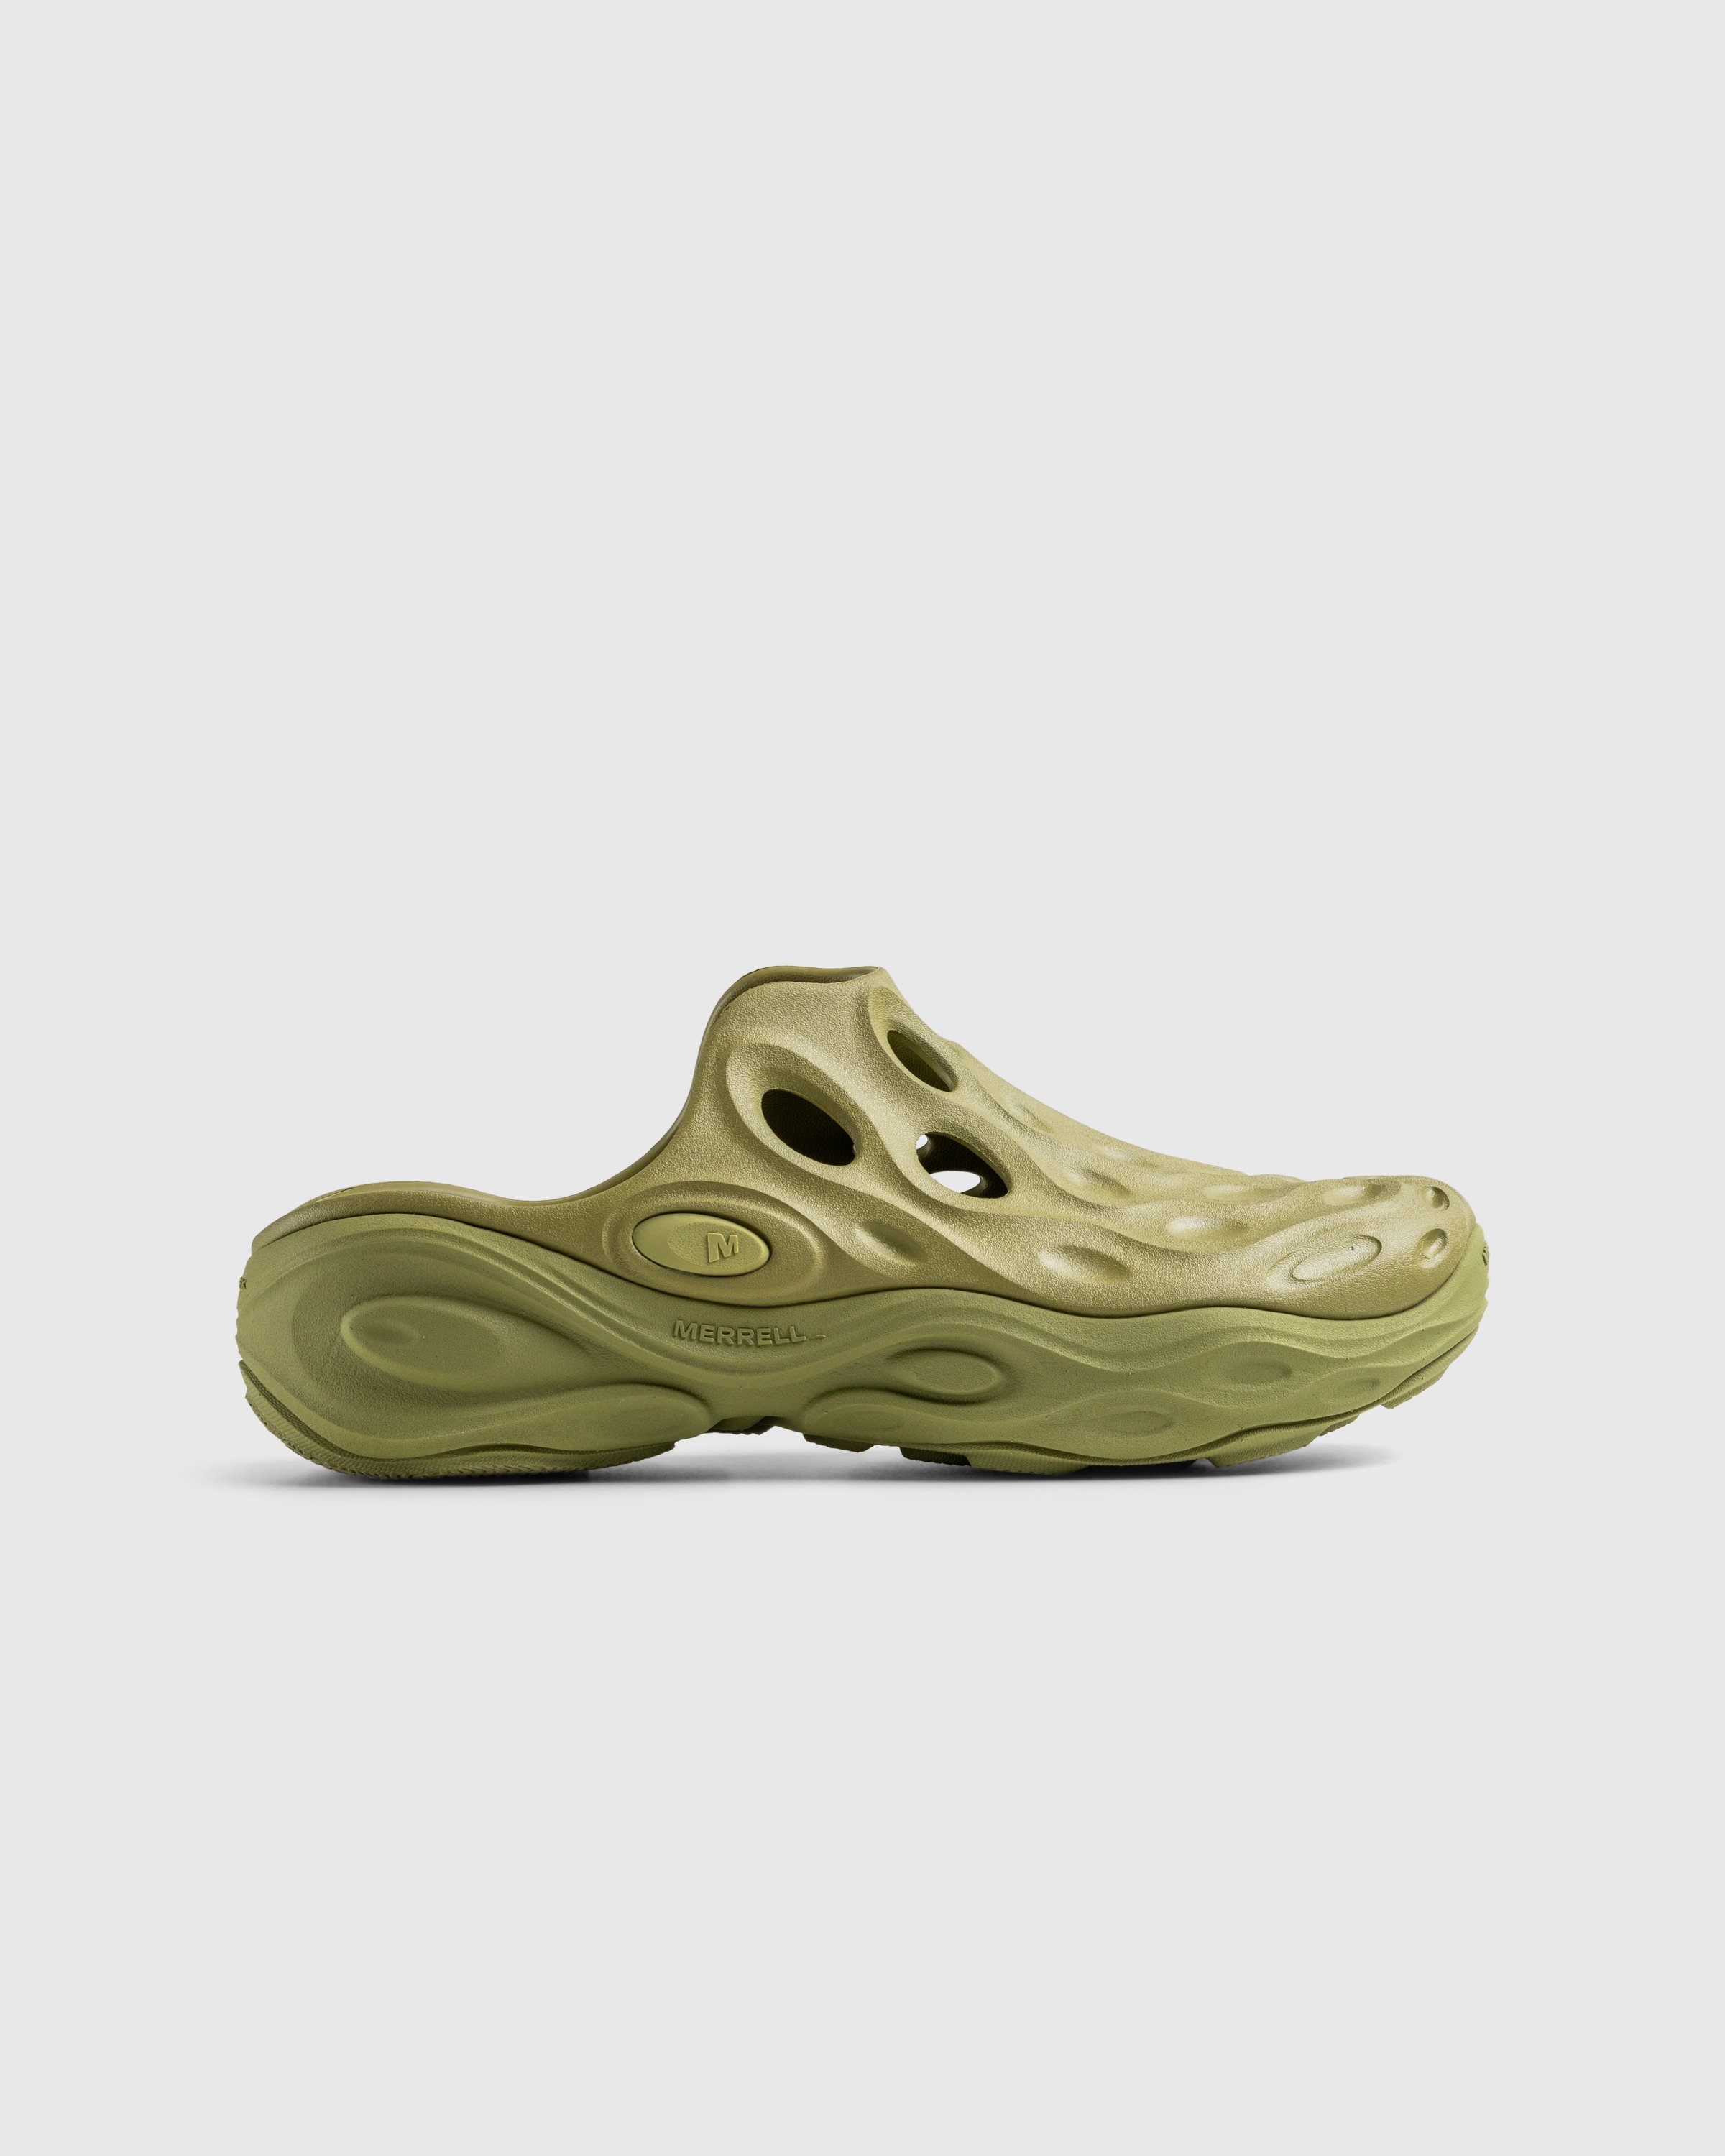 Merrell - HYDRO NEXT GEN MULE SE/TRIPLE MOSSTONE - Footwear - Green - Image 1